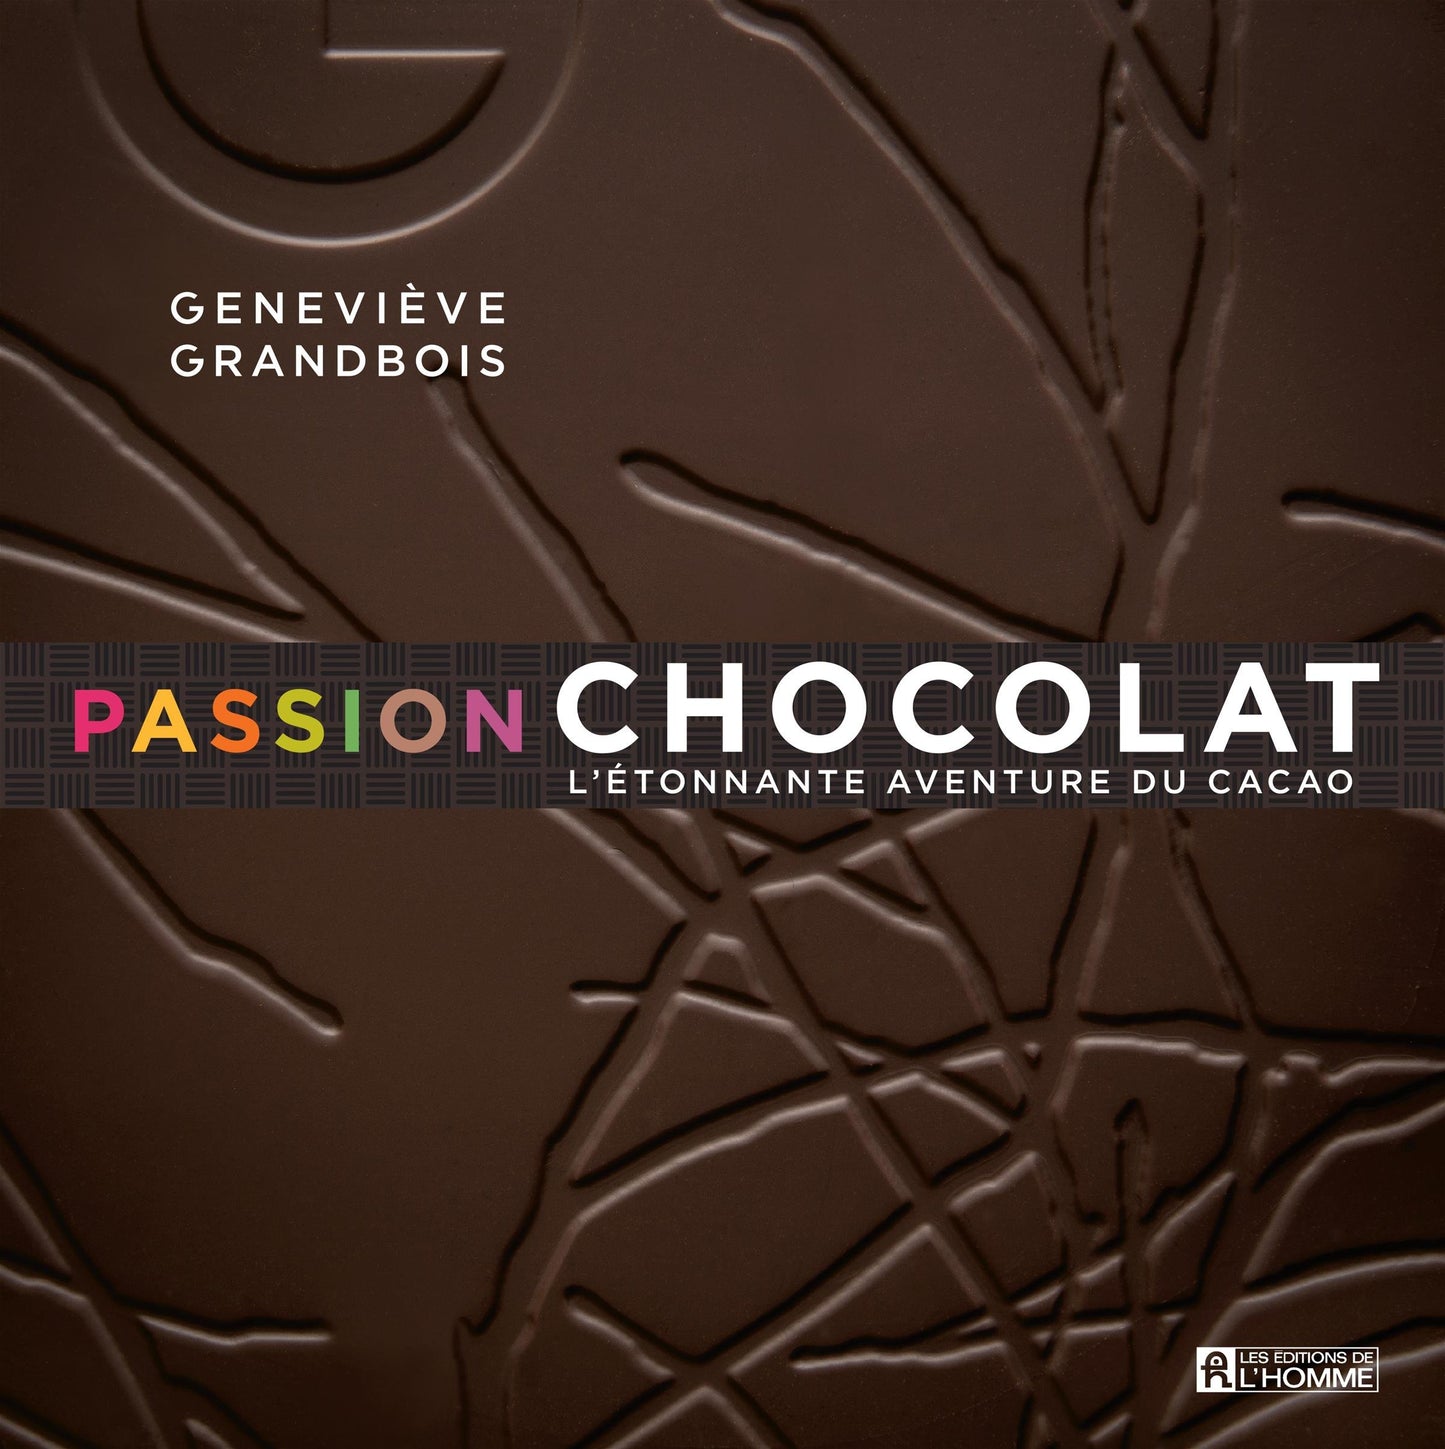 Passion chocolat: L'étonnante aventure du cacao Grandbois/ Geneviève